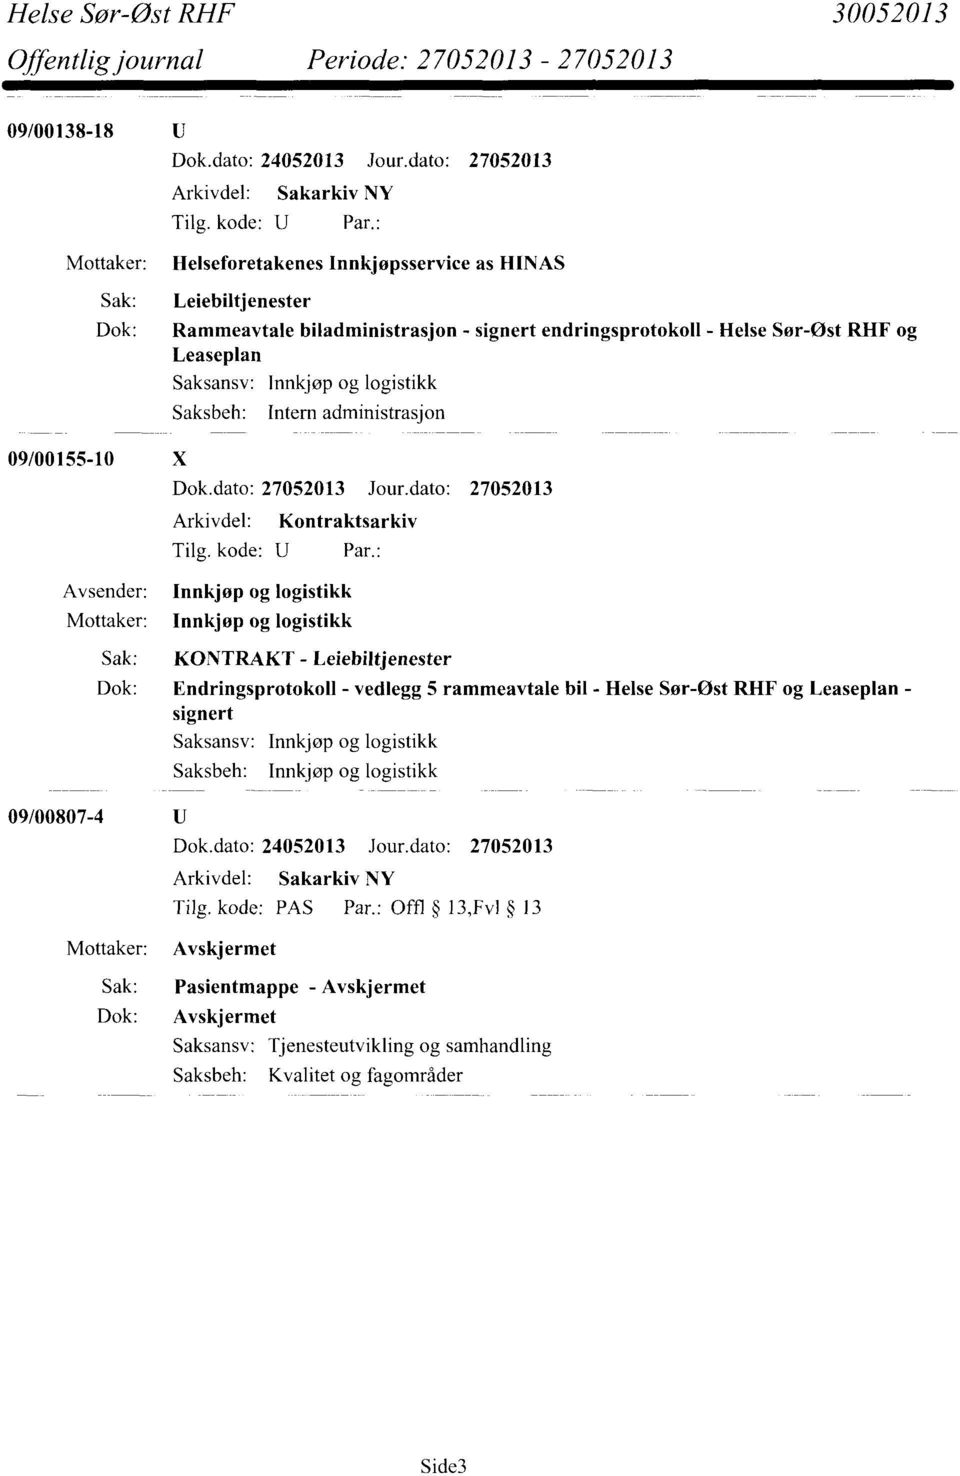 Dok: Endringsprotokoll - vedlegg 5 rammeavtale bil - Helse Sør-Øst RHF og Leaseplan - signert Saksansv: Innkjøp og logistikk Saksbeh: Innkjøp og logistikk 09/00807-4 Tilg.